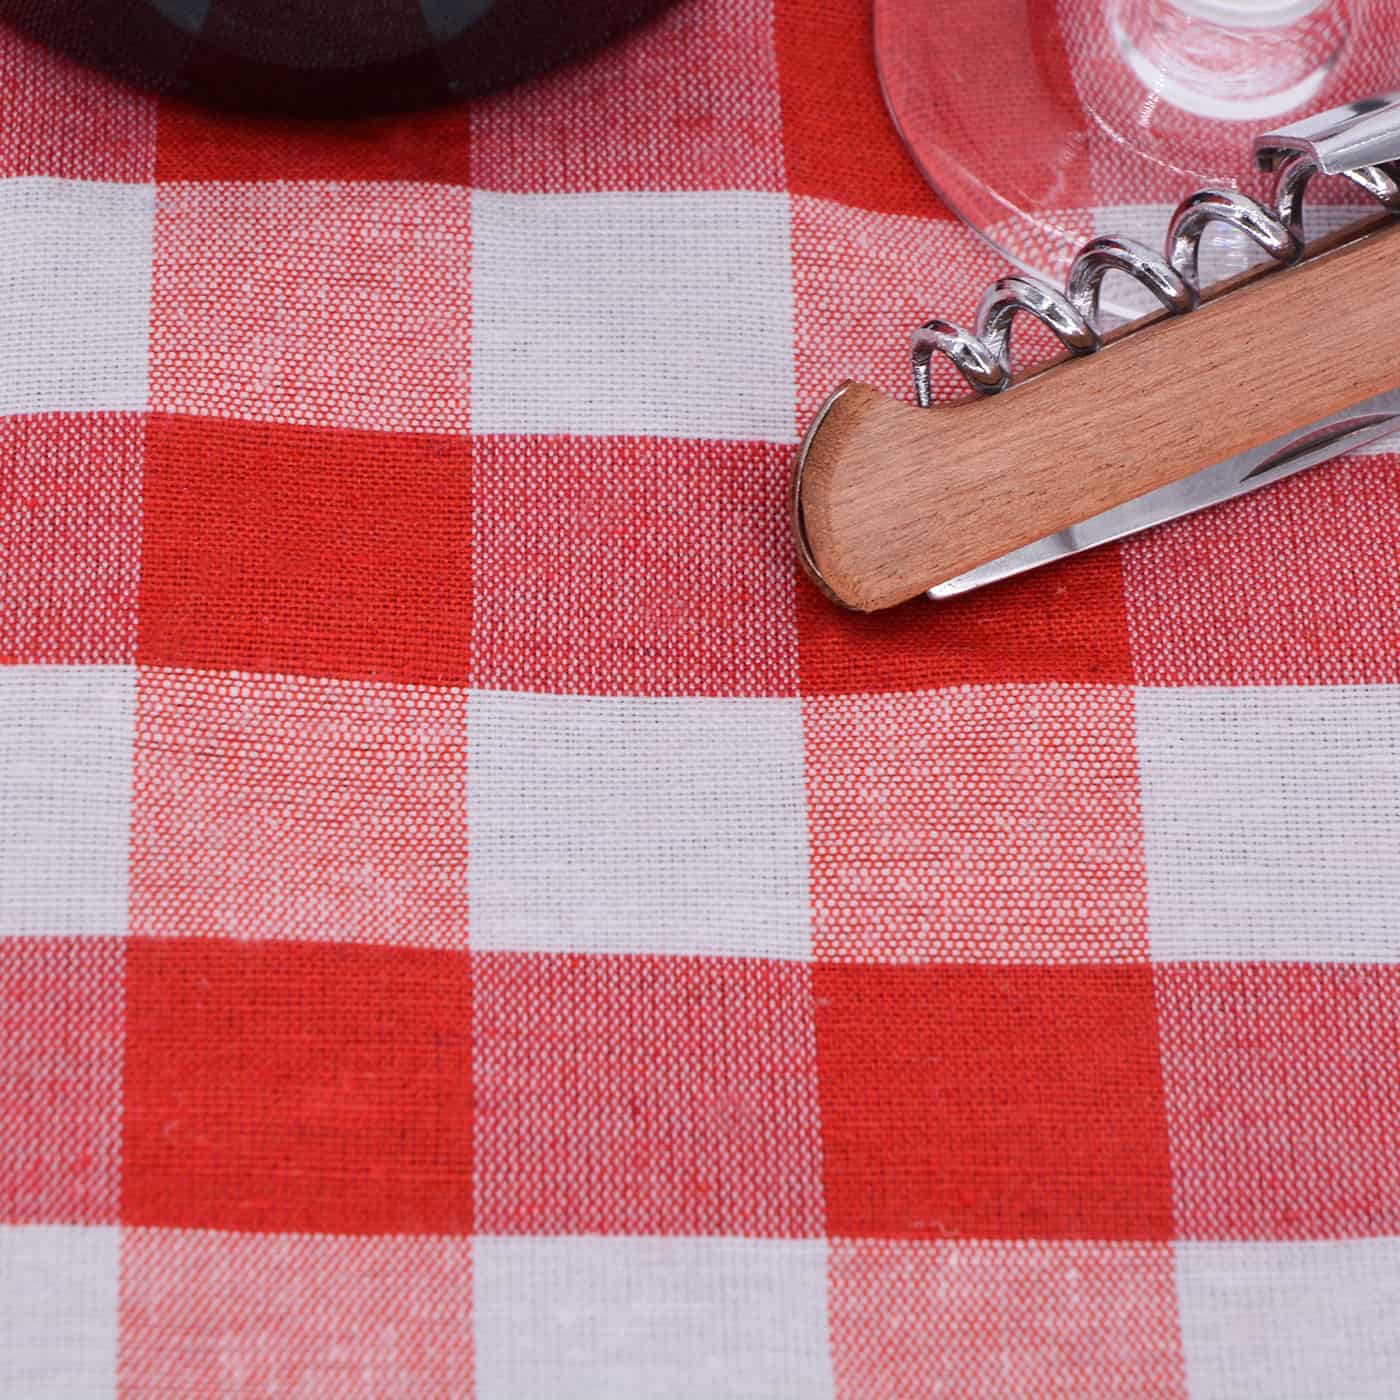 Manta picnic impermeable cuadros rojos y blancos – Les Jardins de la  Comtesse es